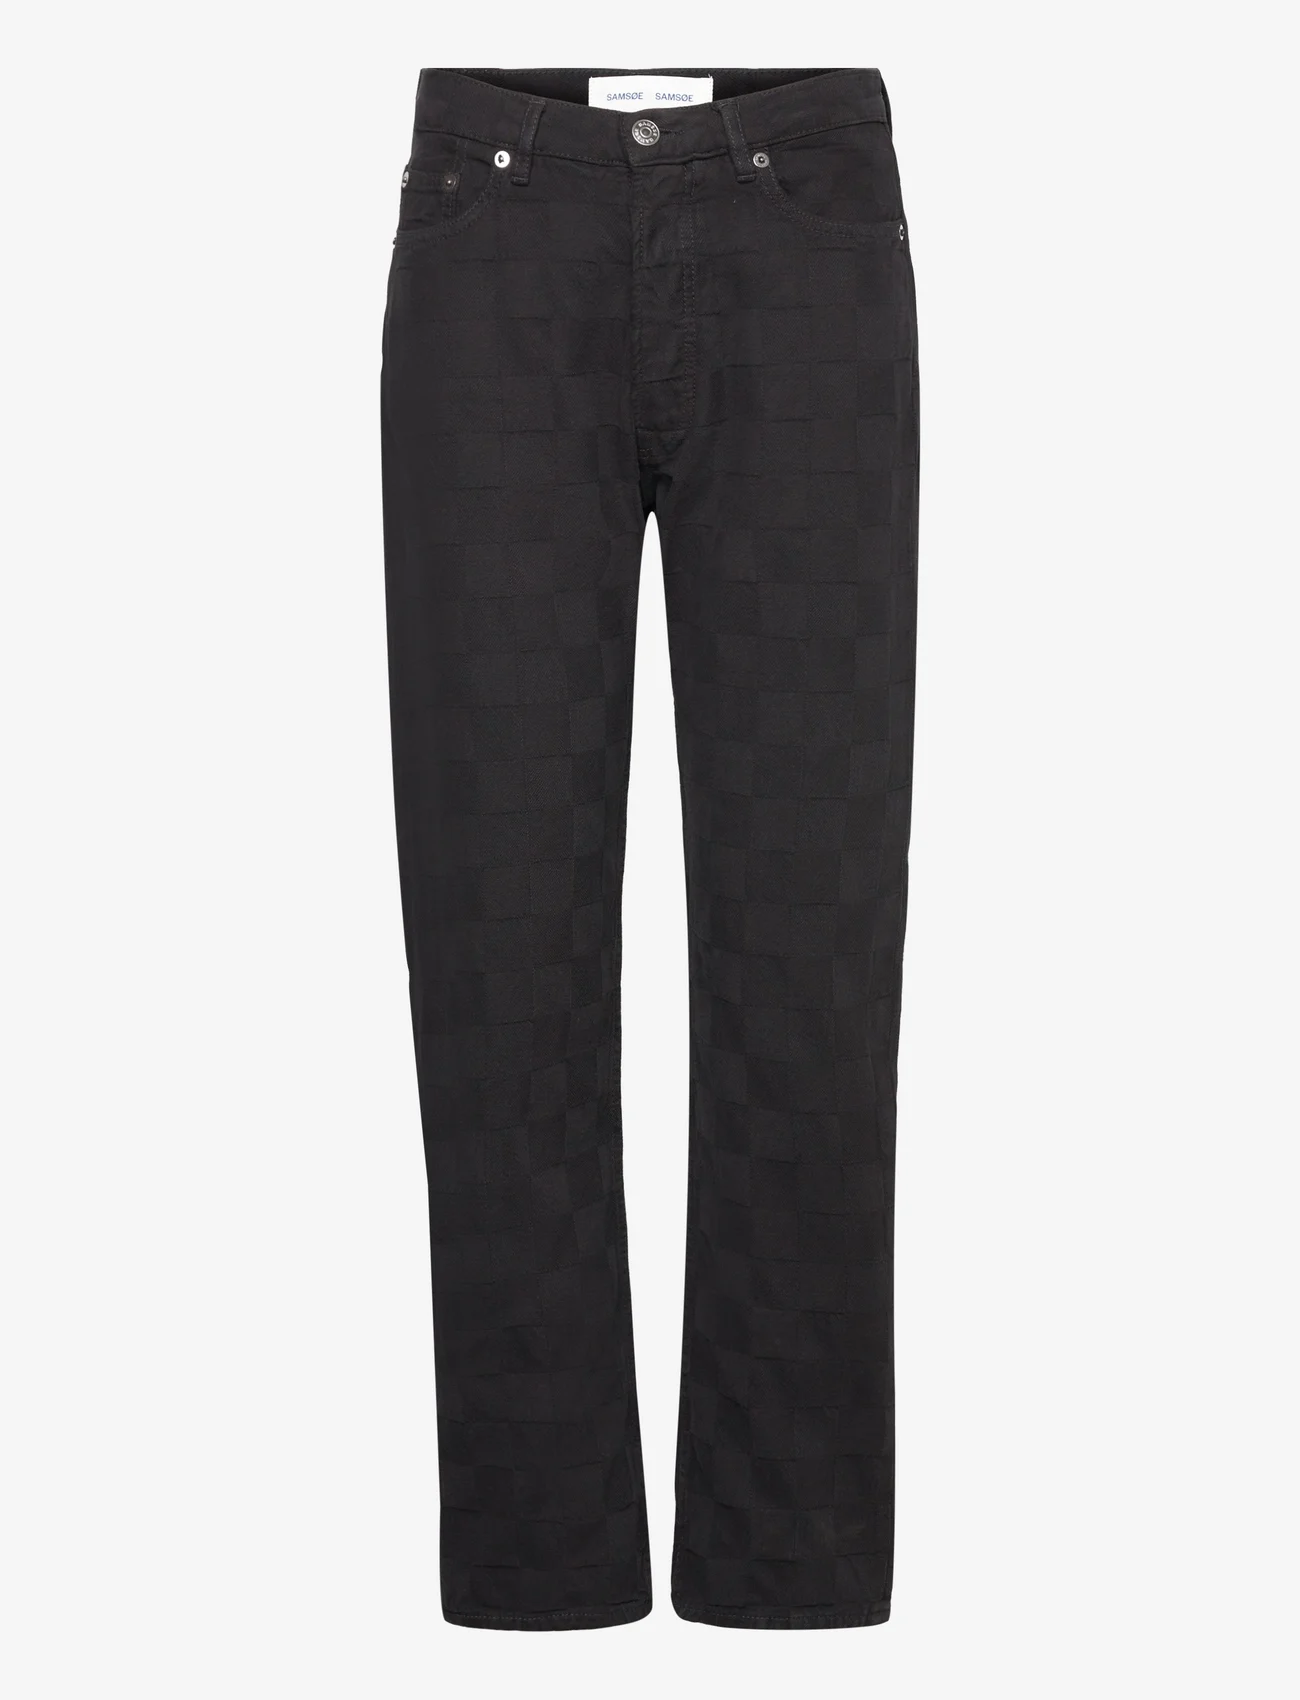 Samsøe Samsøe - Susan jeans 14956 - tiesaus kirpimo džinsai - black od check - 0